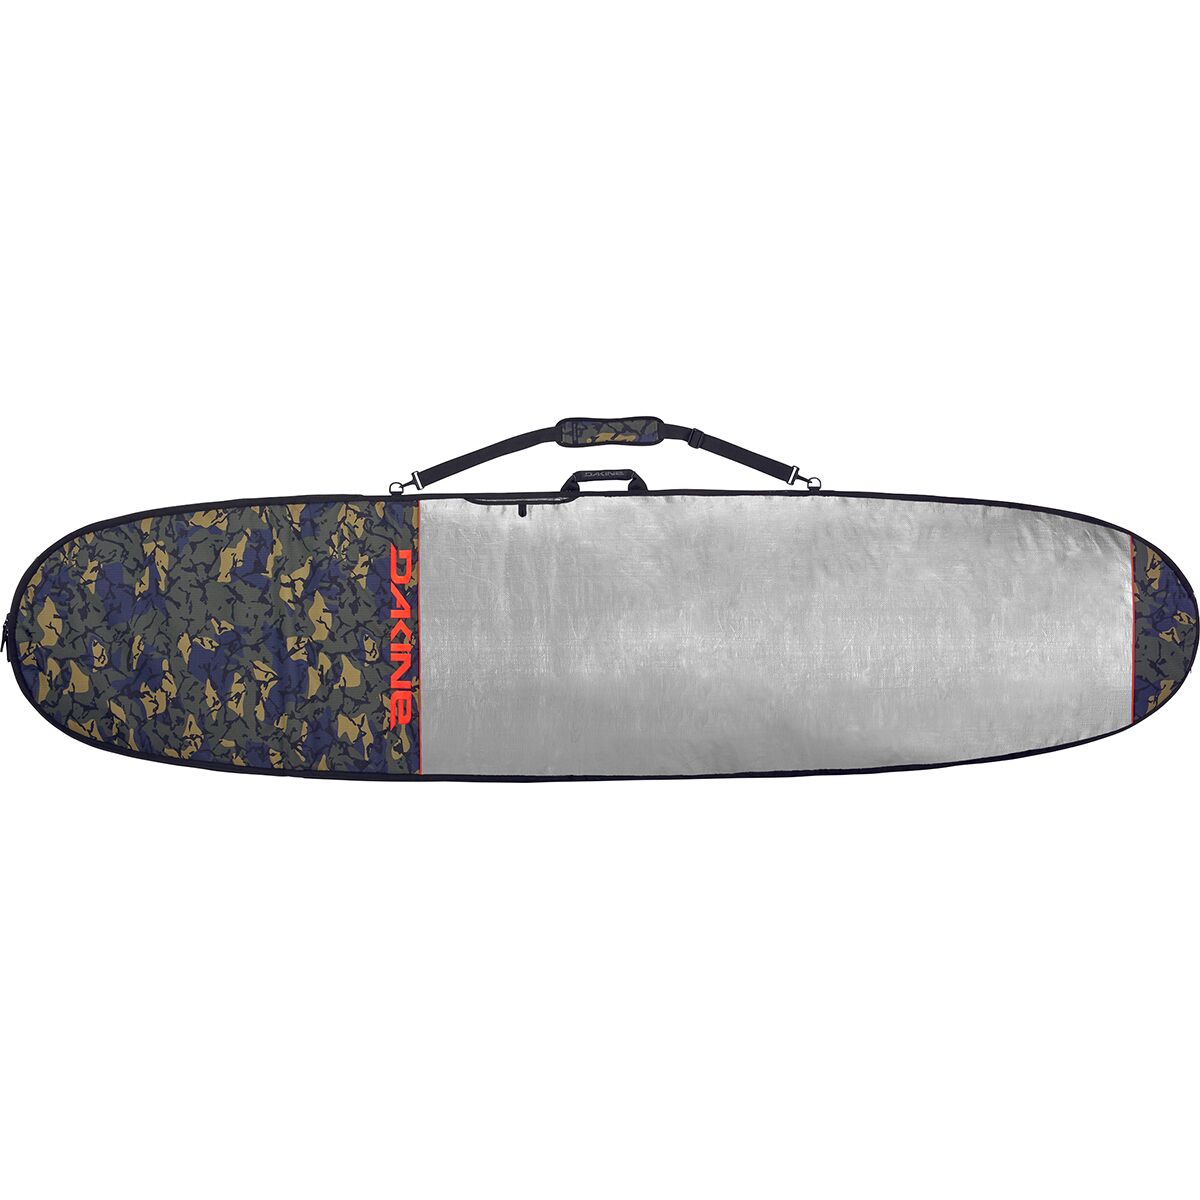 DAKINE Daylight Noserider Surfboard Bag